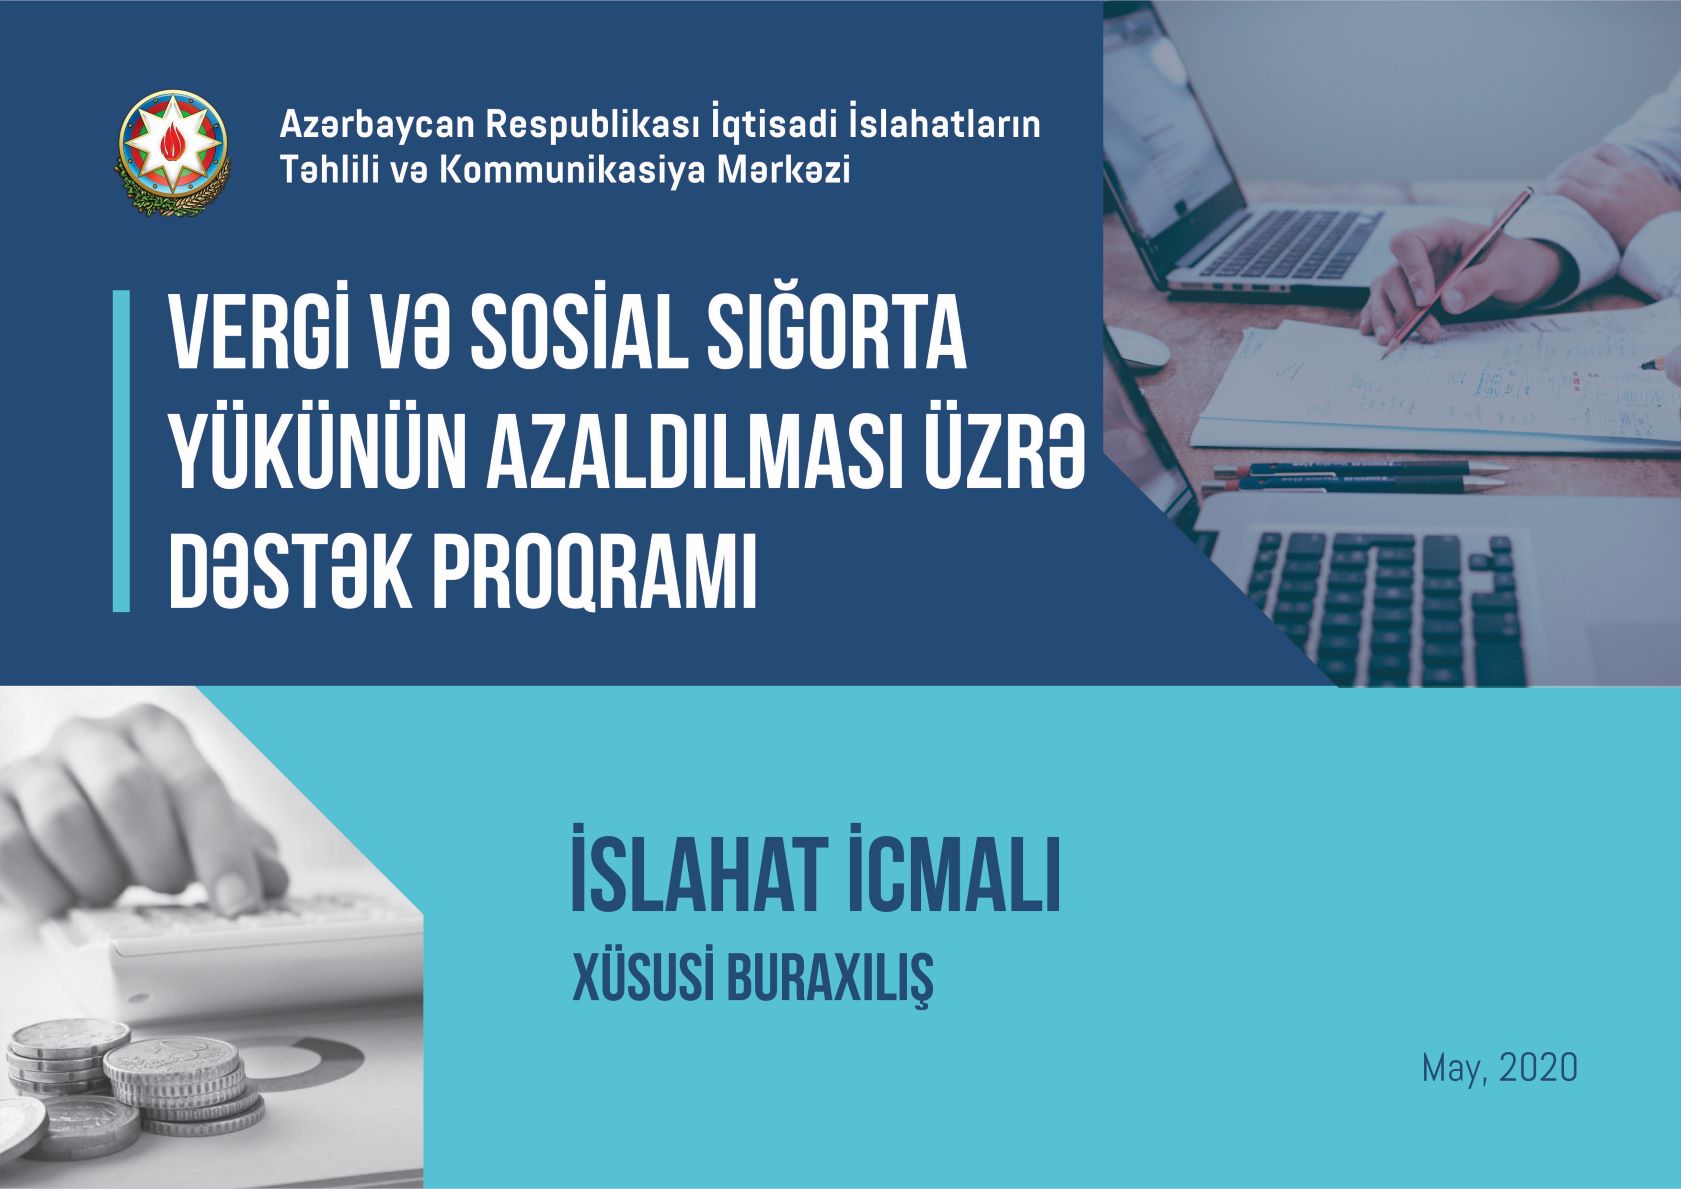 “İslahat icmalı” vergi və sosial sığorta güzəştlərinə həsr olunub